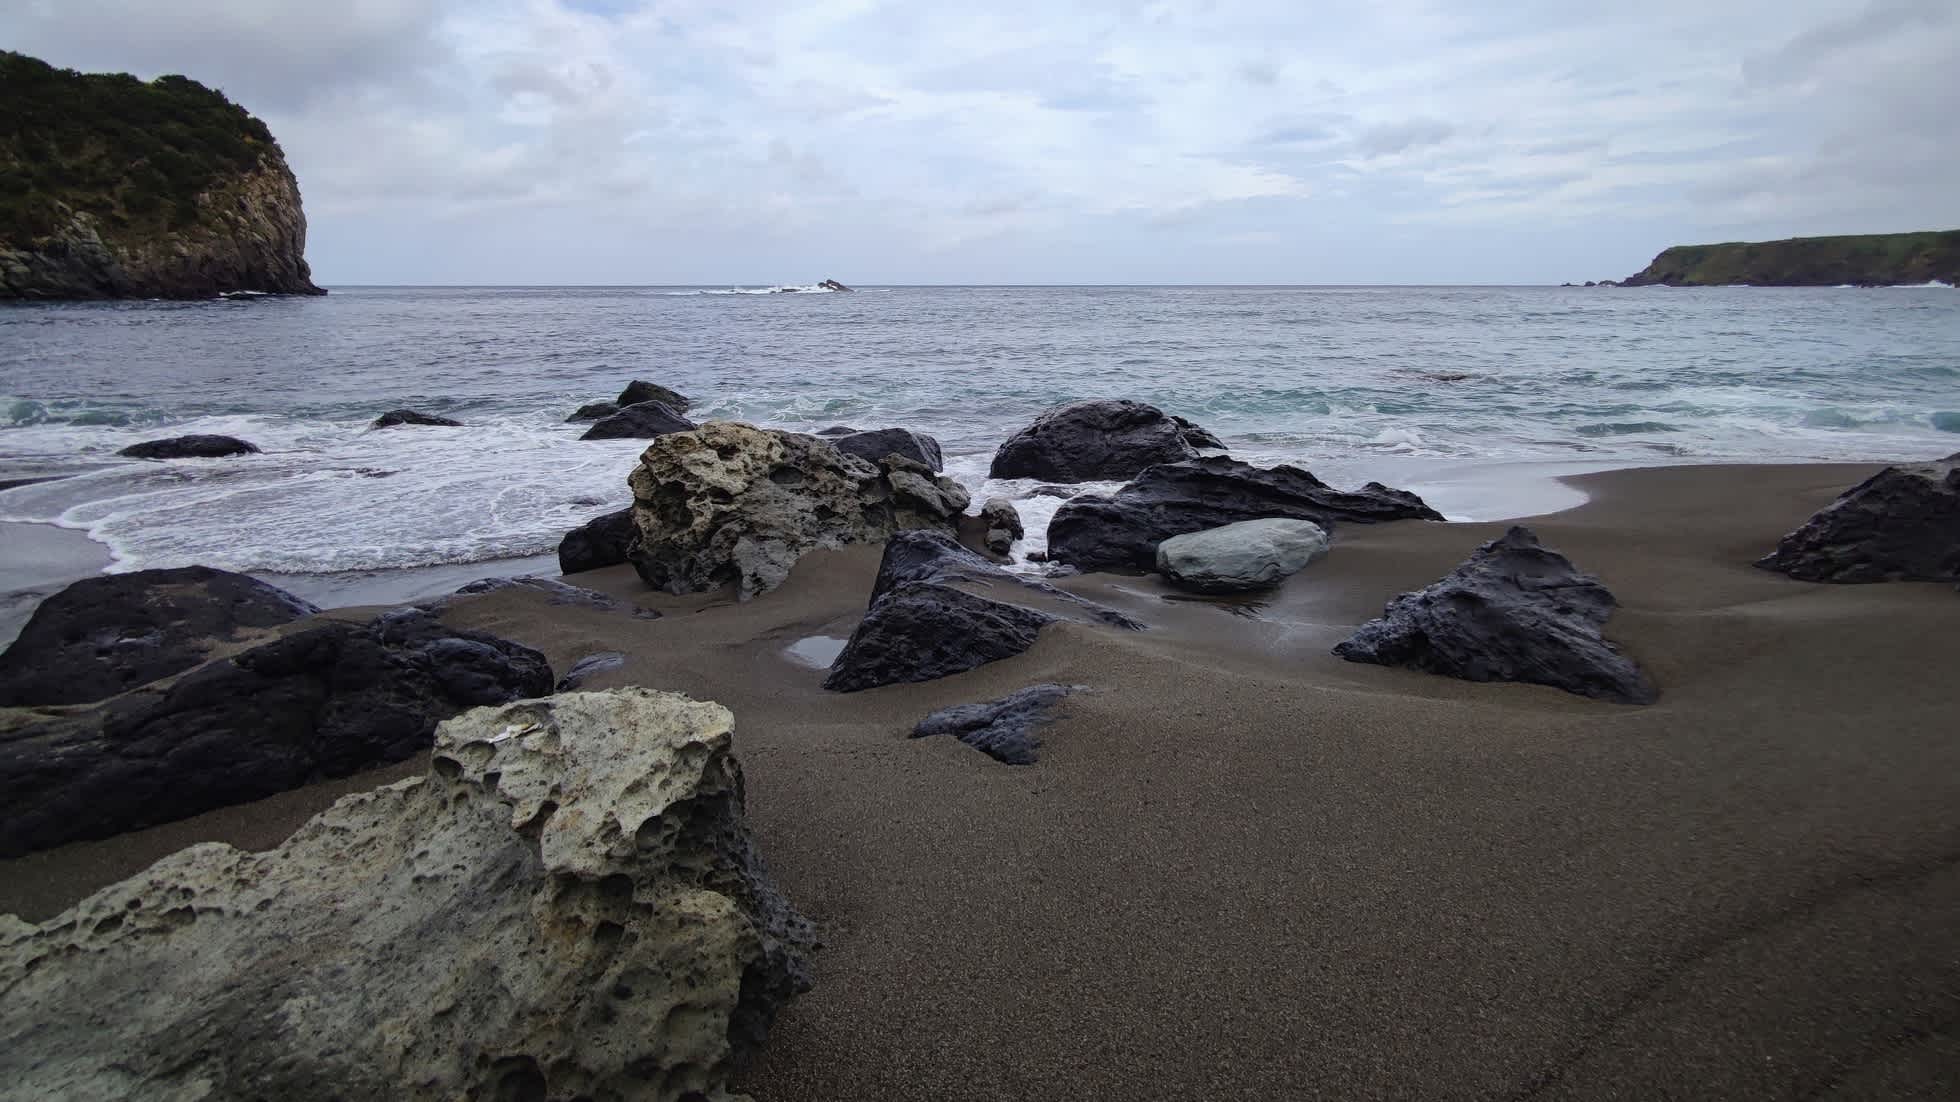 Plage de sable noir sur l'île volcanique de Corvo, aux Açores, au Portugal.

